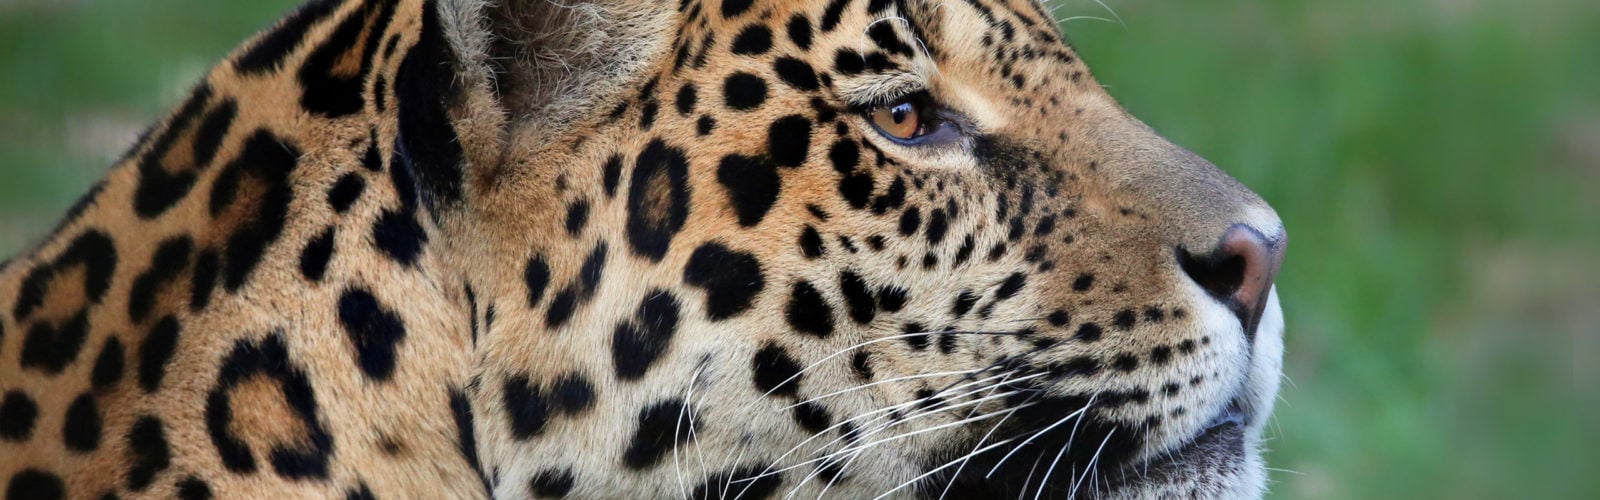 pantanal-jaguar